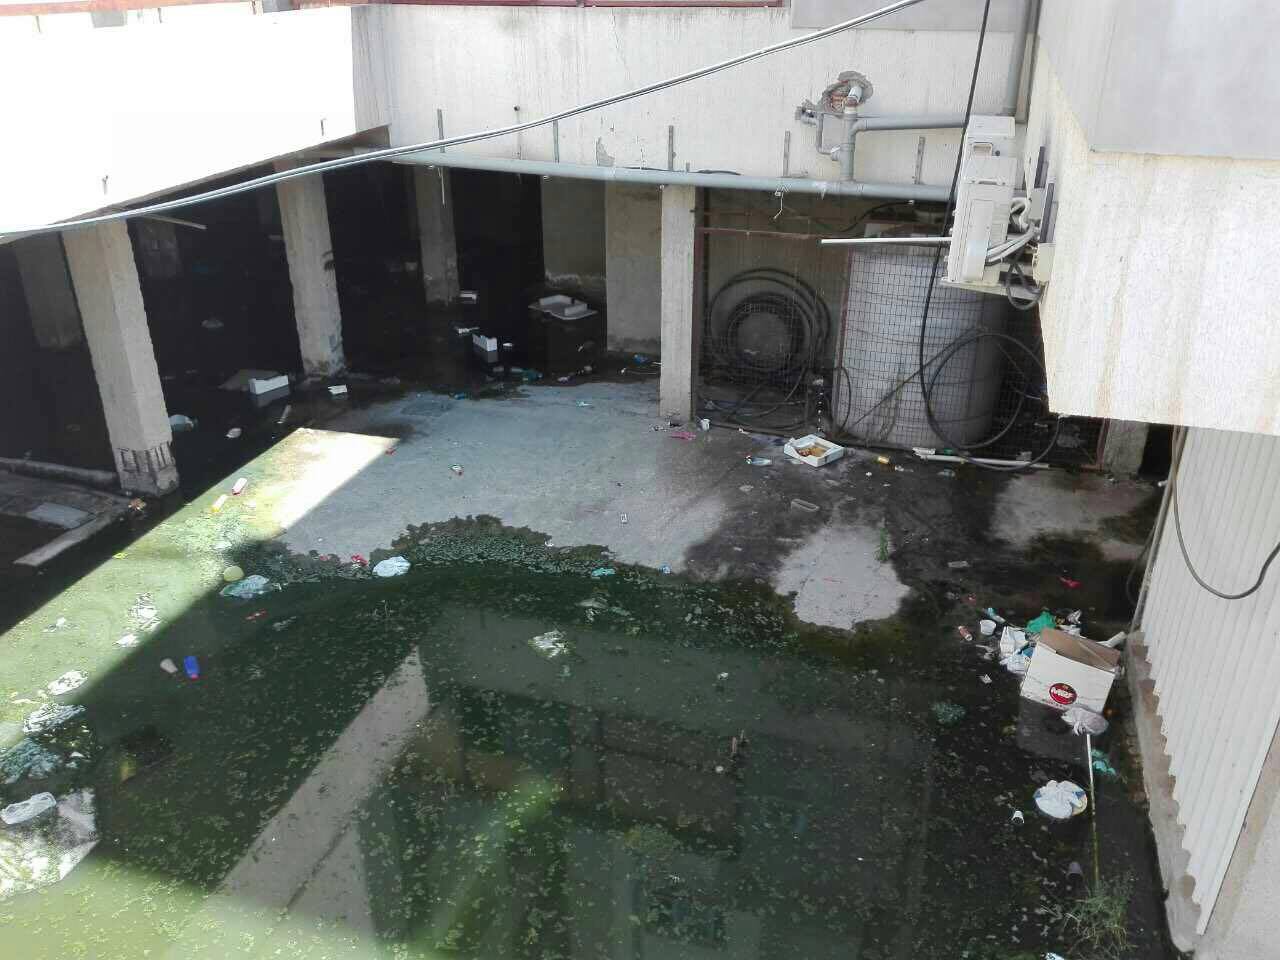 Εικόνες αηδίας : Η πιο βρόμικη πολυκατοικία της Λάρνακας – Δεινοπαθούν οι κάτοικοι